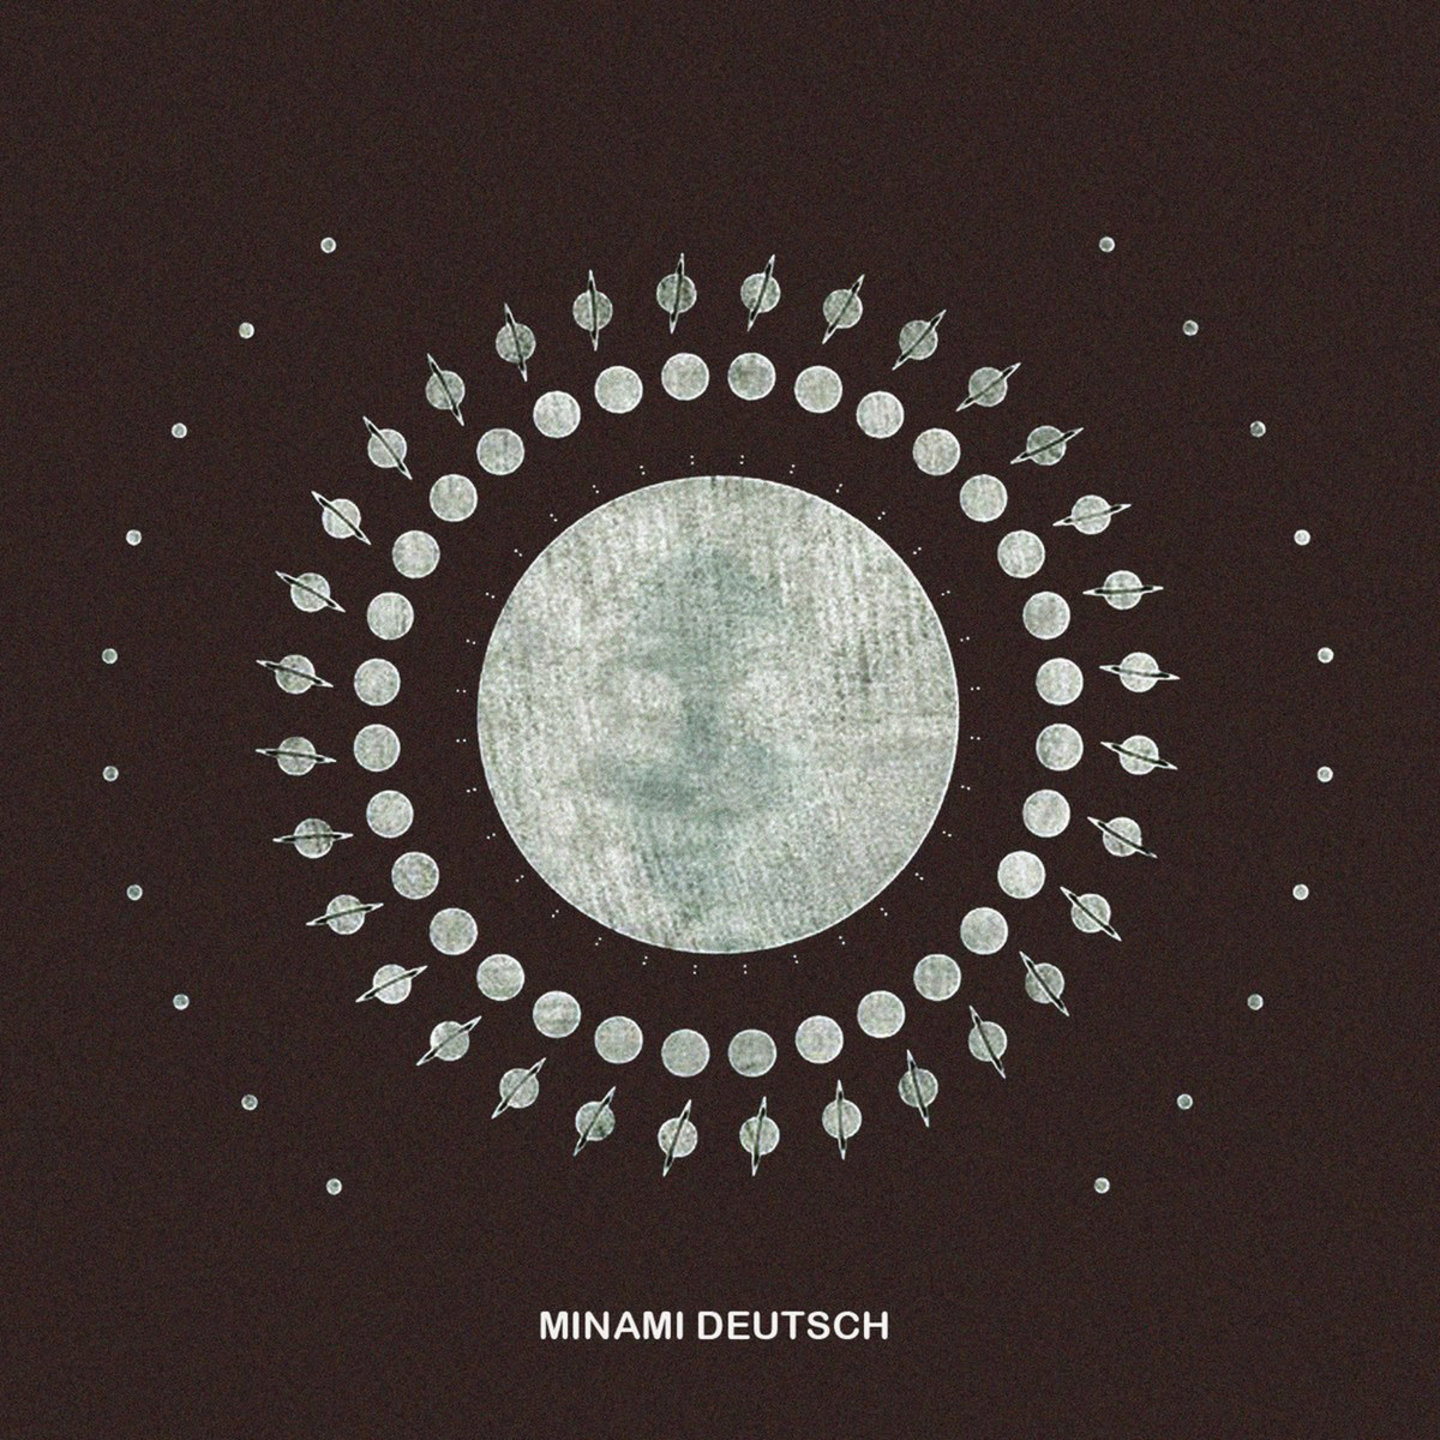 MINAMI DEUTSCH - Minami Deutsch LP